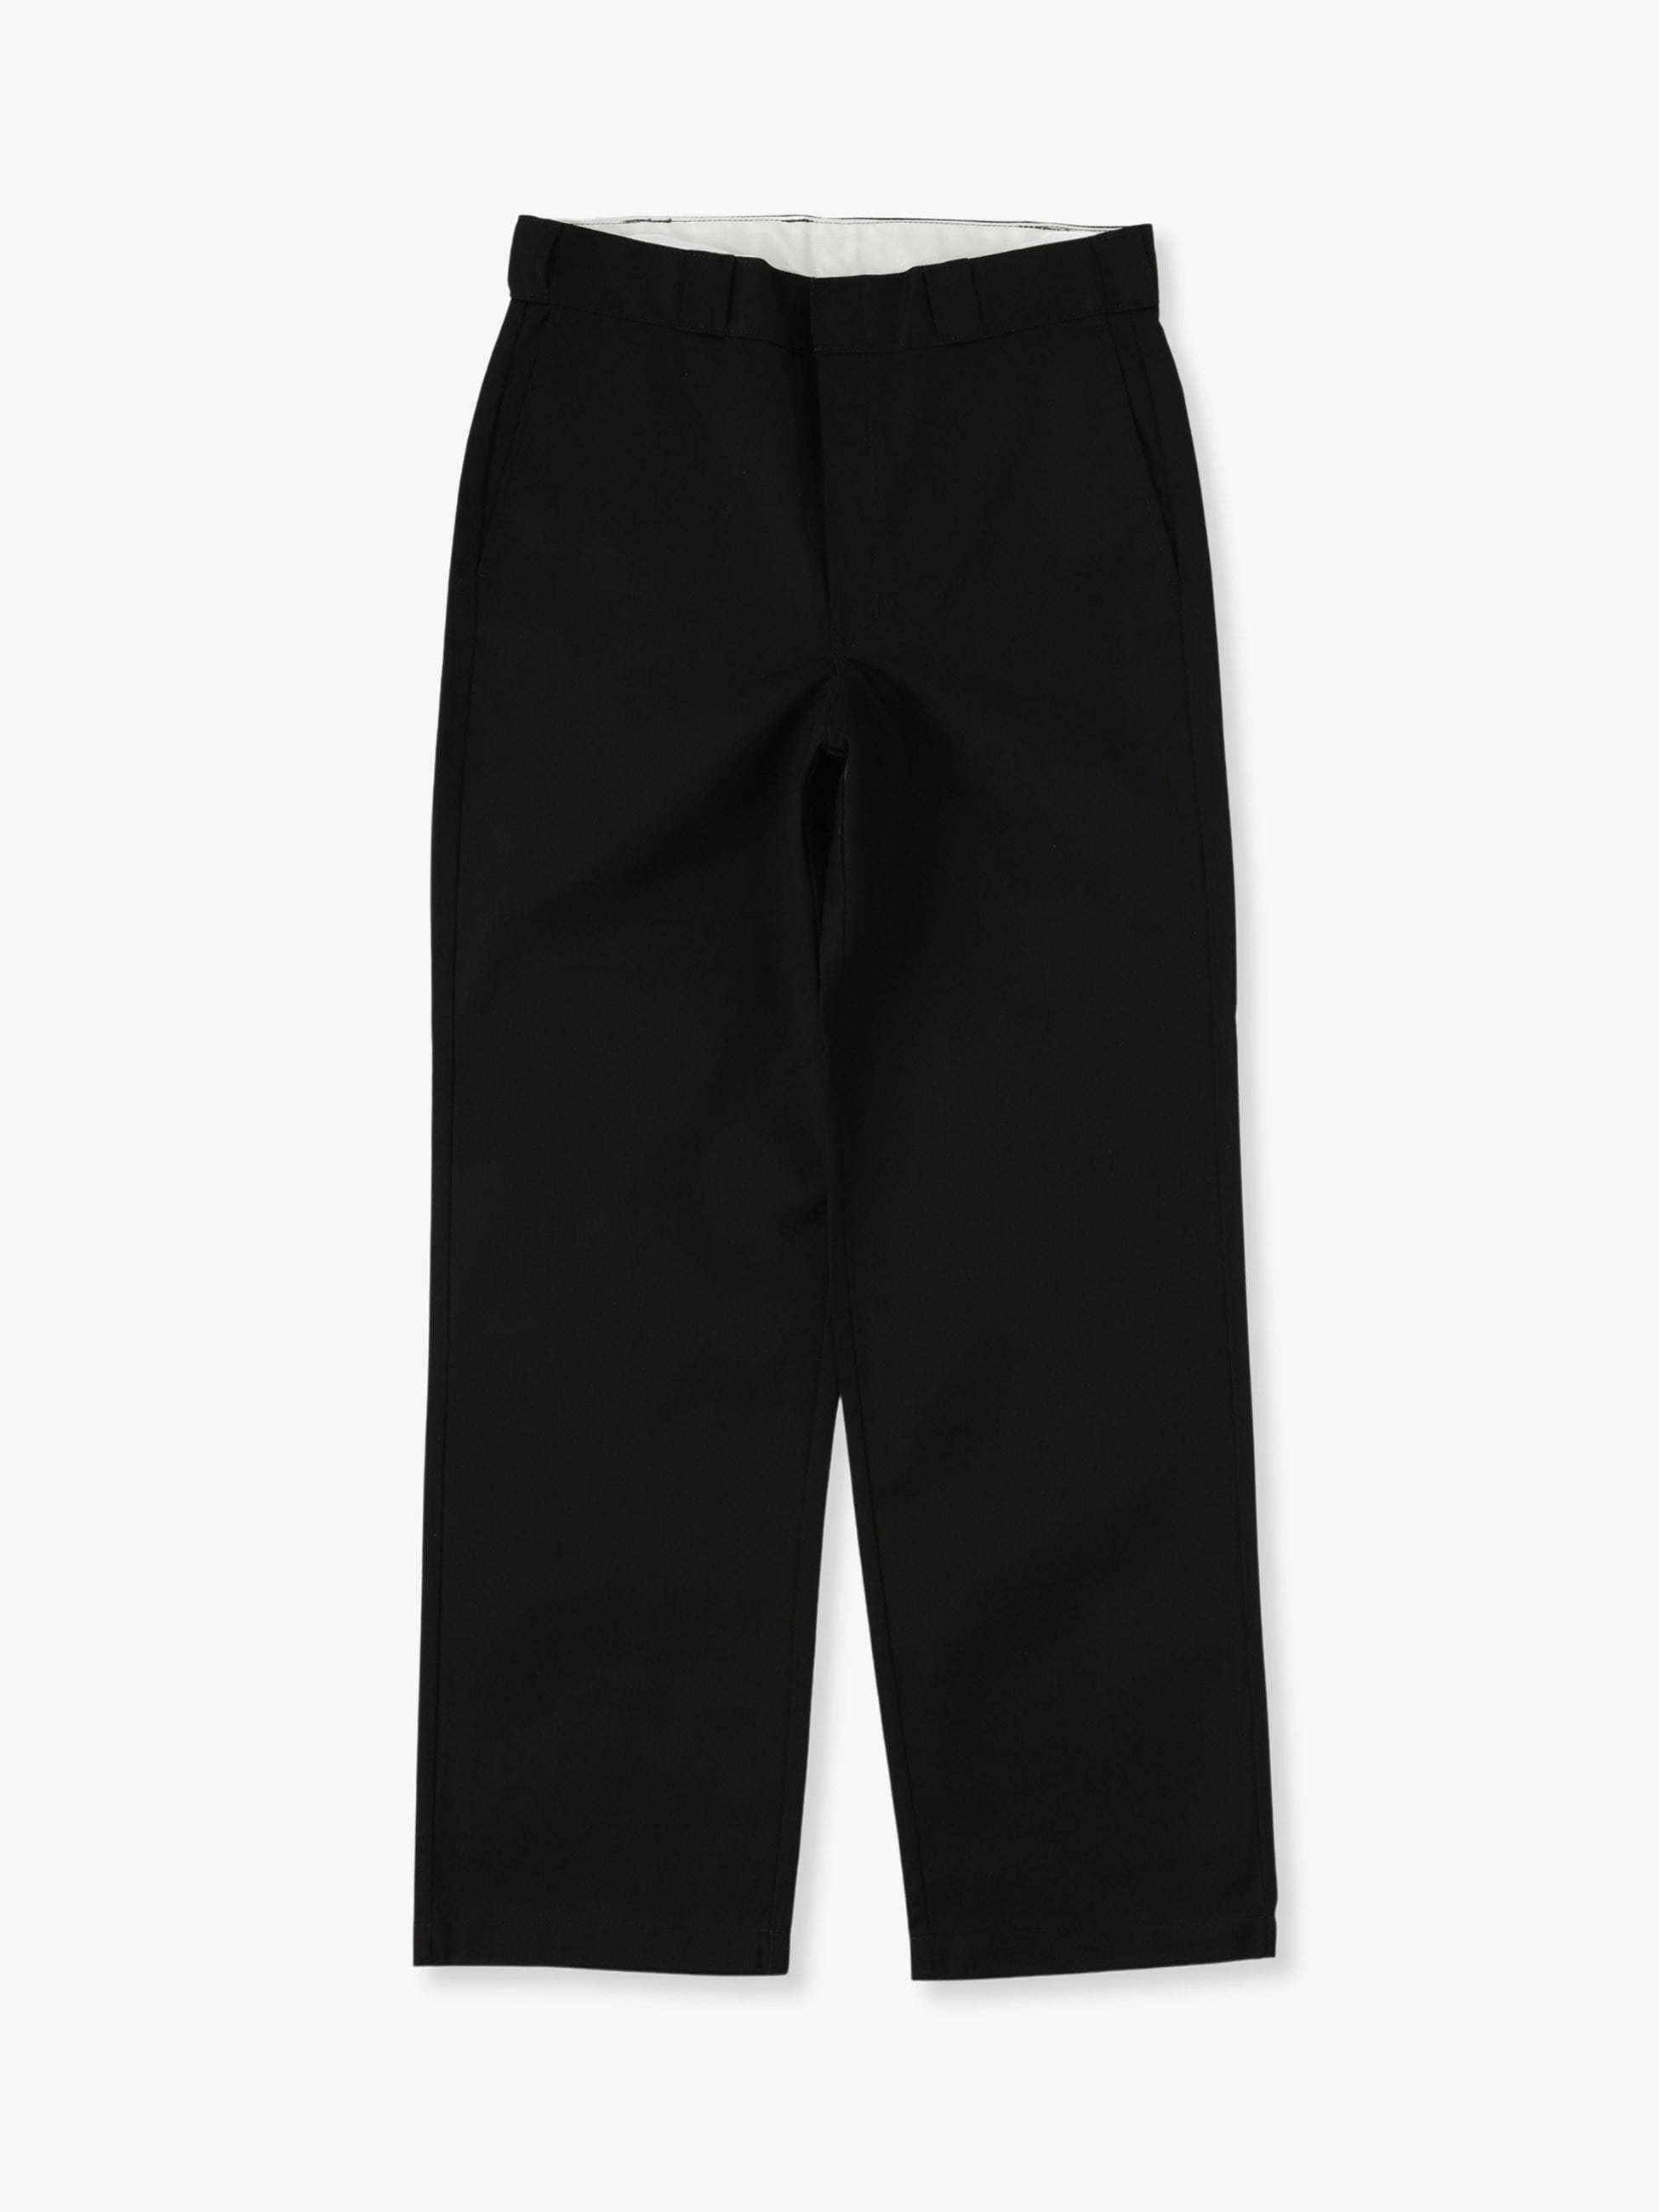 ロンハーマン high waist strech chino pants - パンツ